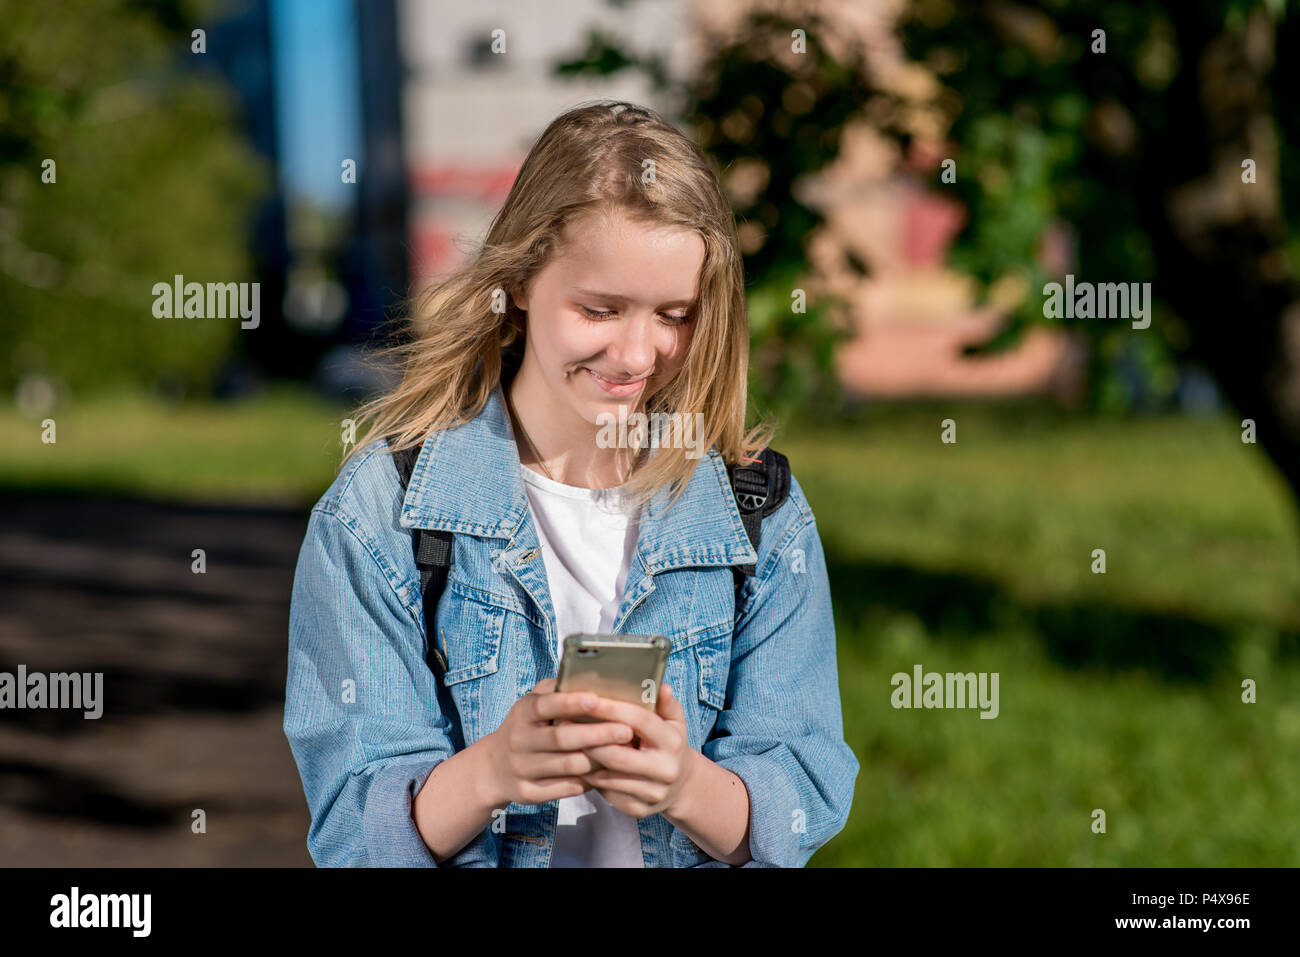 Kleines Mädchen ist blond. Schulmädchen im Sommer nach der Schule. In seinen Händen hält ein Smartphone. Lächelt glücklich. Schreibt Nachrichten in sozialen Netzwerken. Freudige Ruhe nach dem Institut. Stockfoto